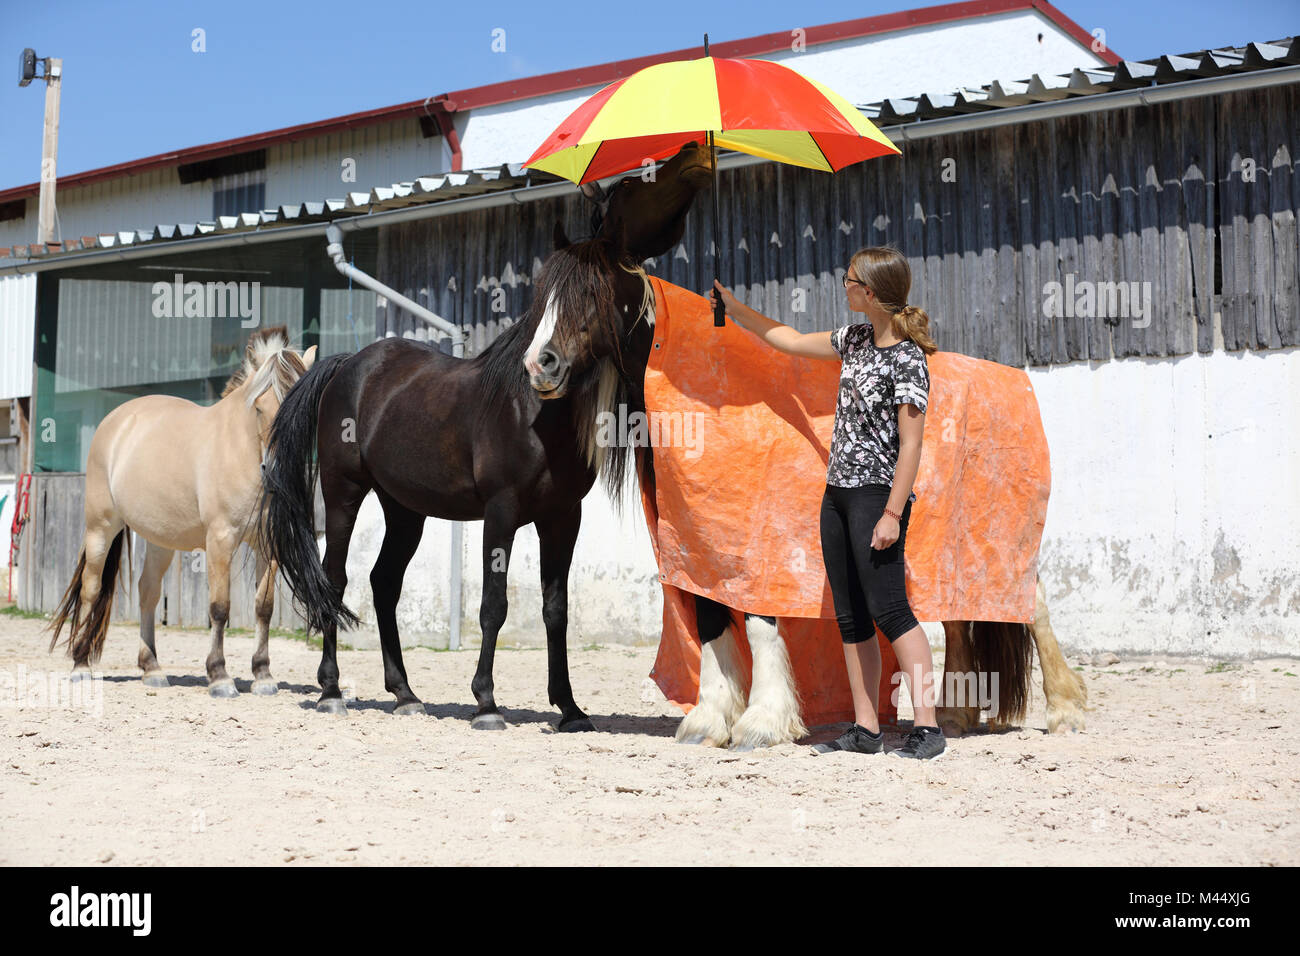 Arabian Horse, Caballo y noruego Vanner Gitana caballo. La formación de una calma prueba con la ayuda de una gran manta y un paraguas. Alemania Foto de stock